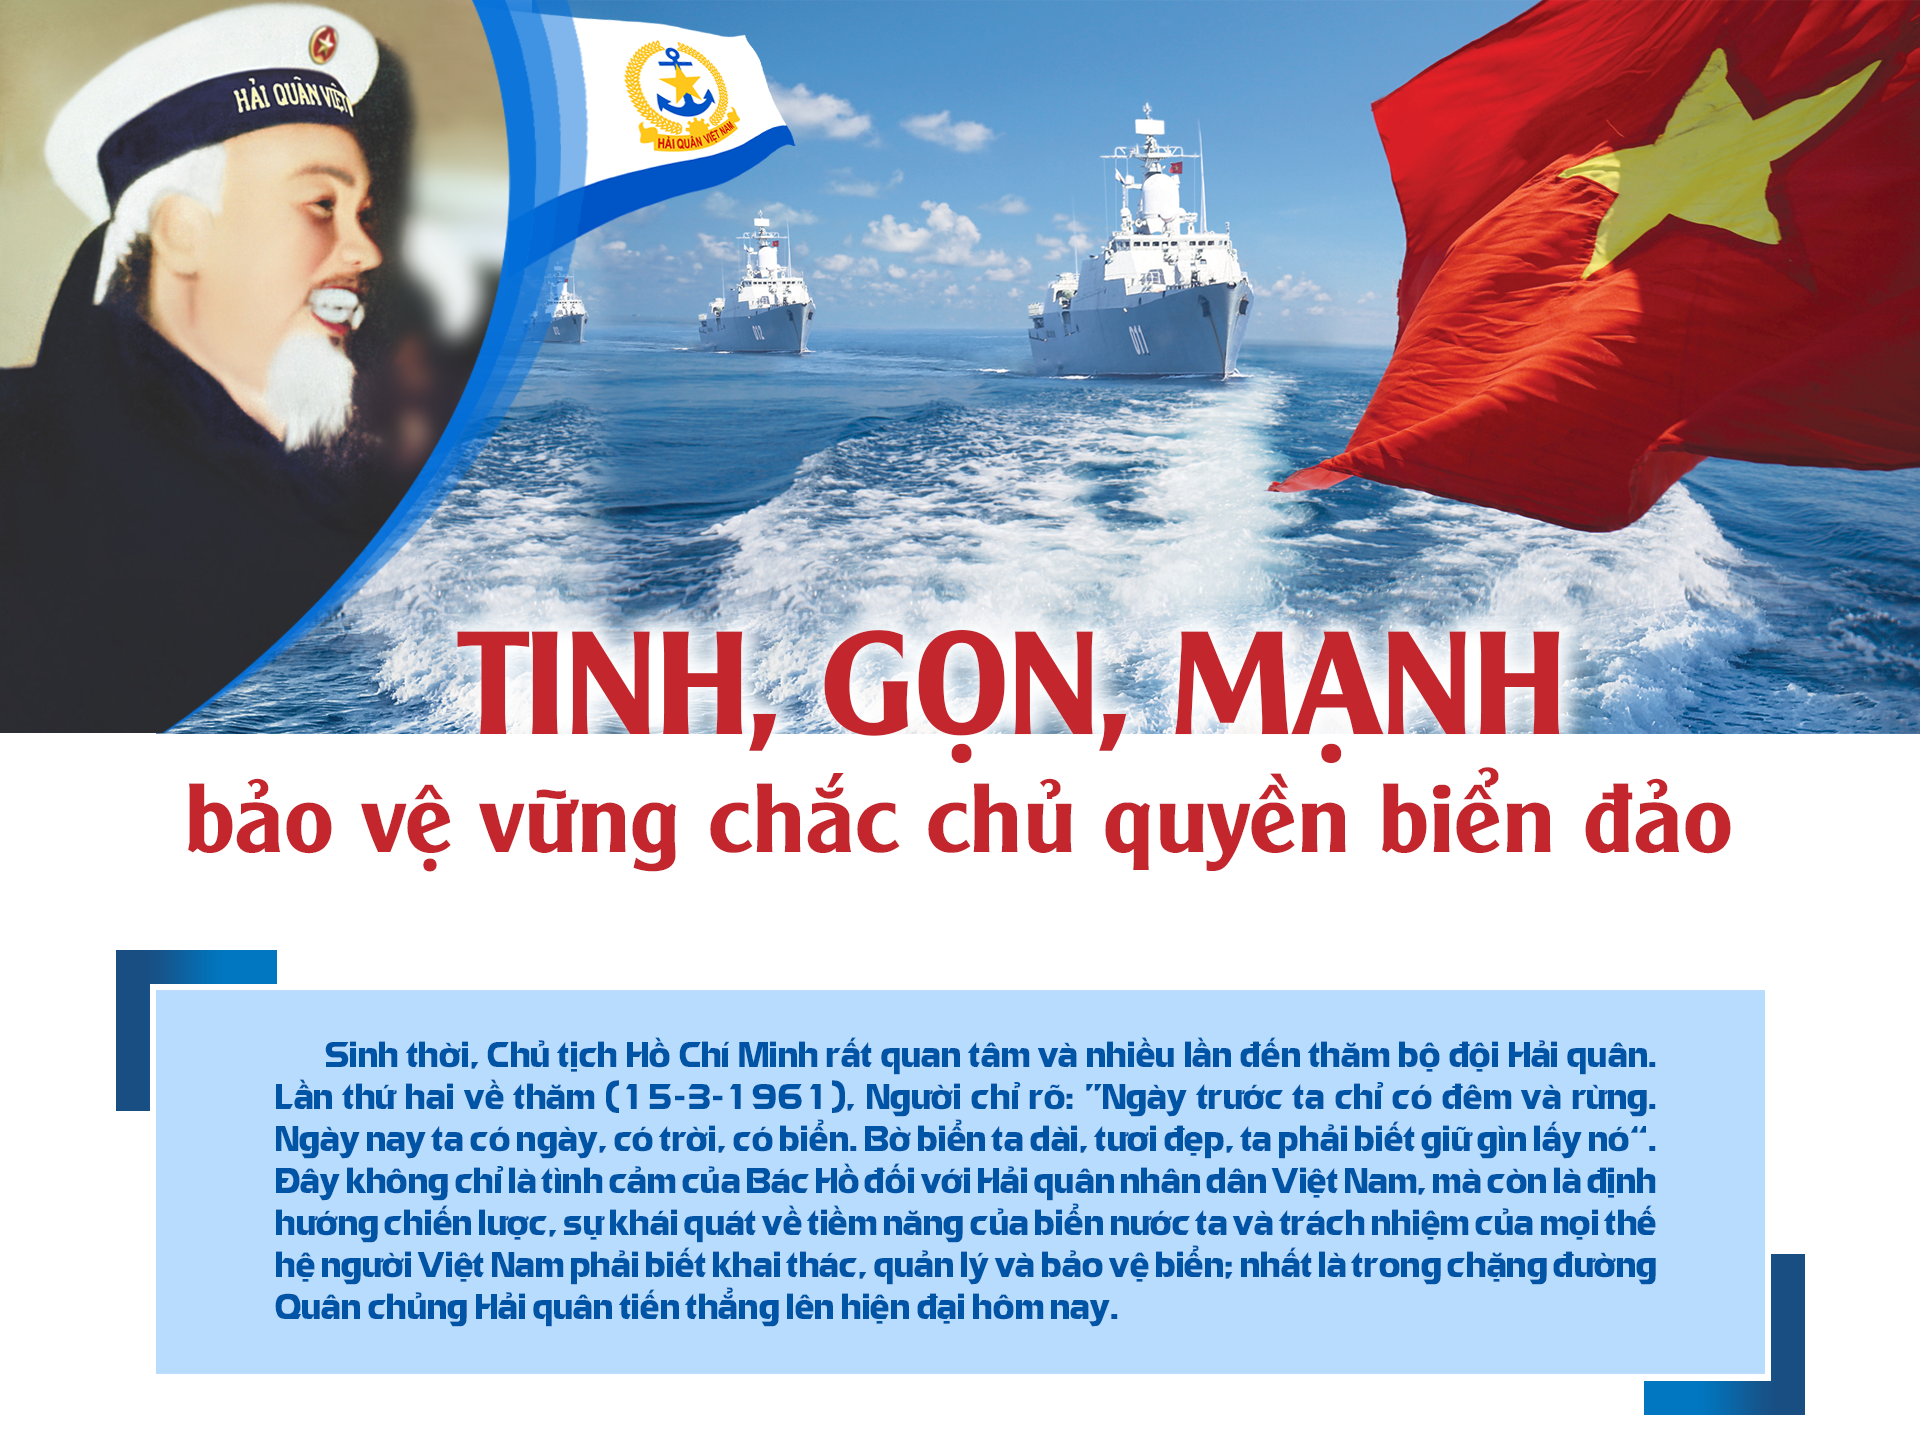 CHỦ QUYỀN BIỂN ĐẢO: Việt Nam là một trong những quốc gia có chủ quyền biển đảo lớn nhất thế giới. Hãy khám phá và chiêm ngưỡng những vùng đất tuyệt đẹp trên biển, tìm hiểu về lịch sử và văn hóa của những đảo quê hương của chúng ta - những kho báu vô giá của đất nước.